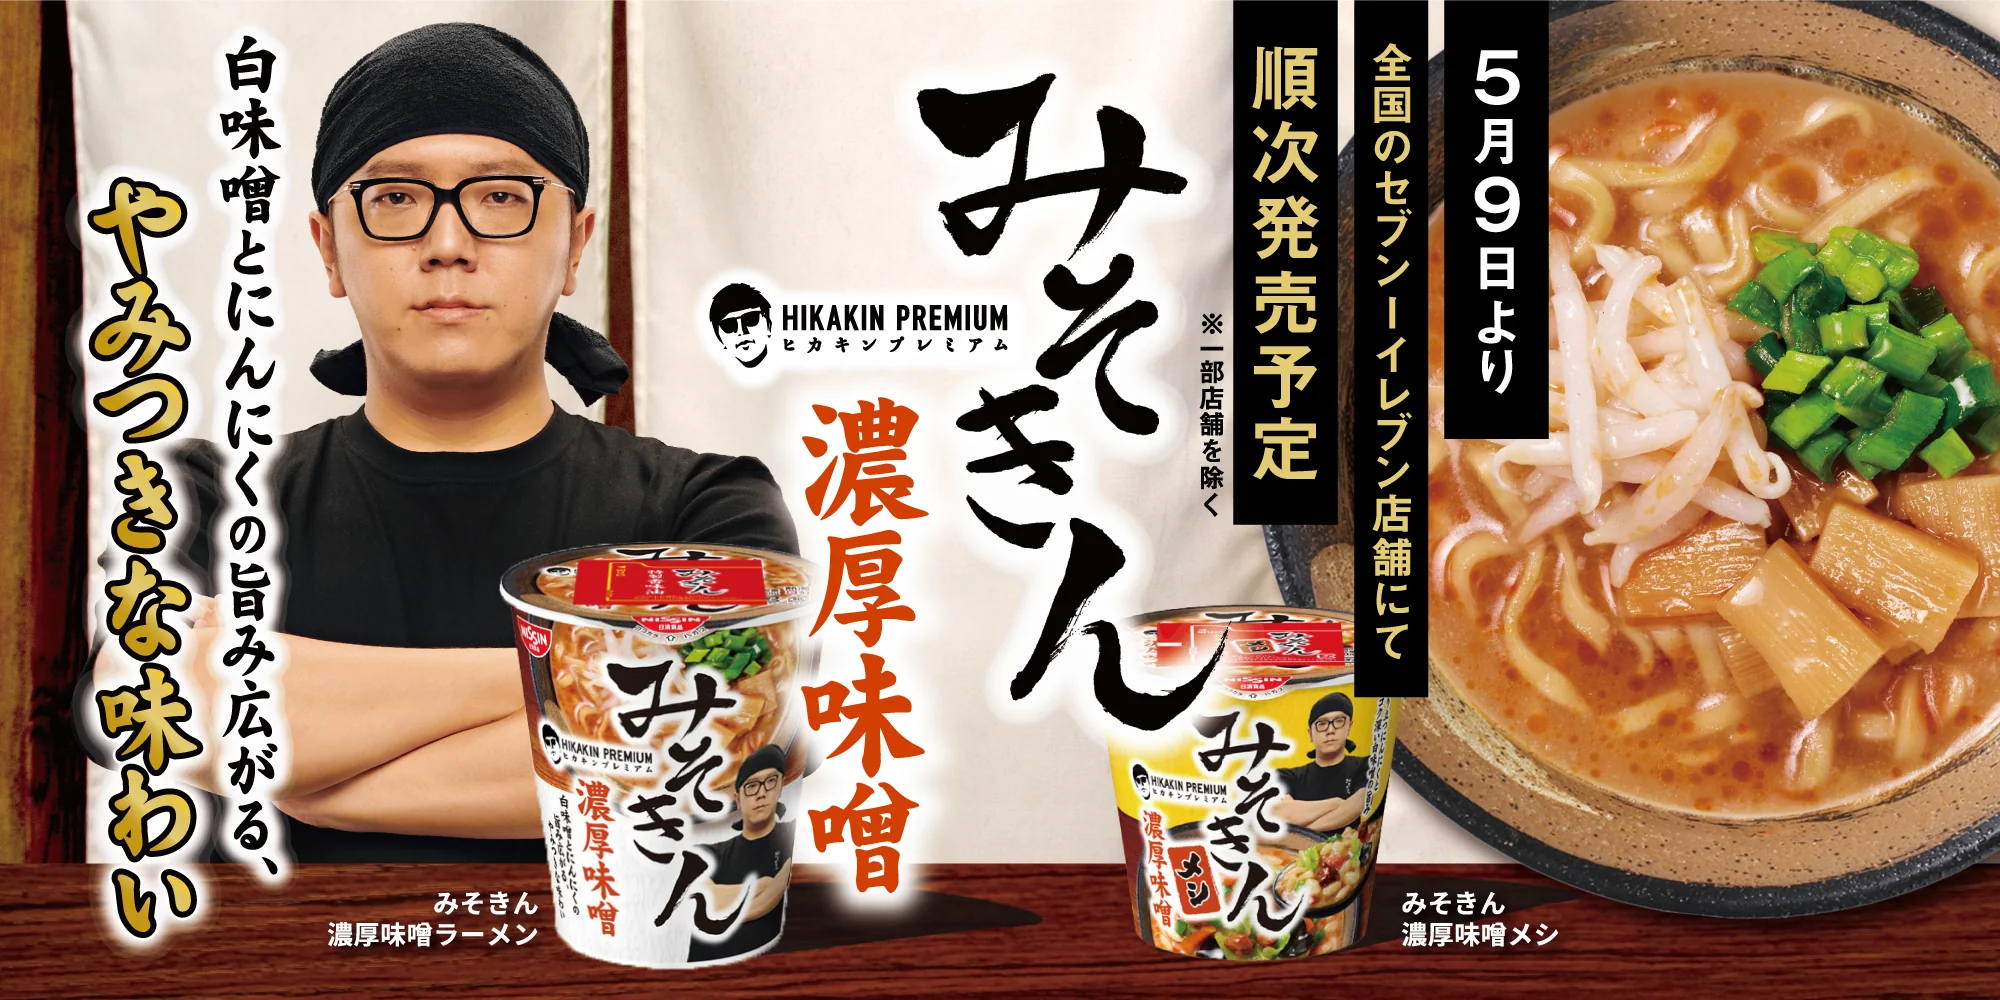 【大人気カップ麺】HIKAKIN PREMIUM みそきんメシ【ヒカキン監修】